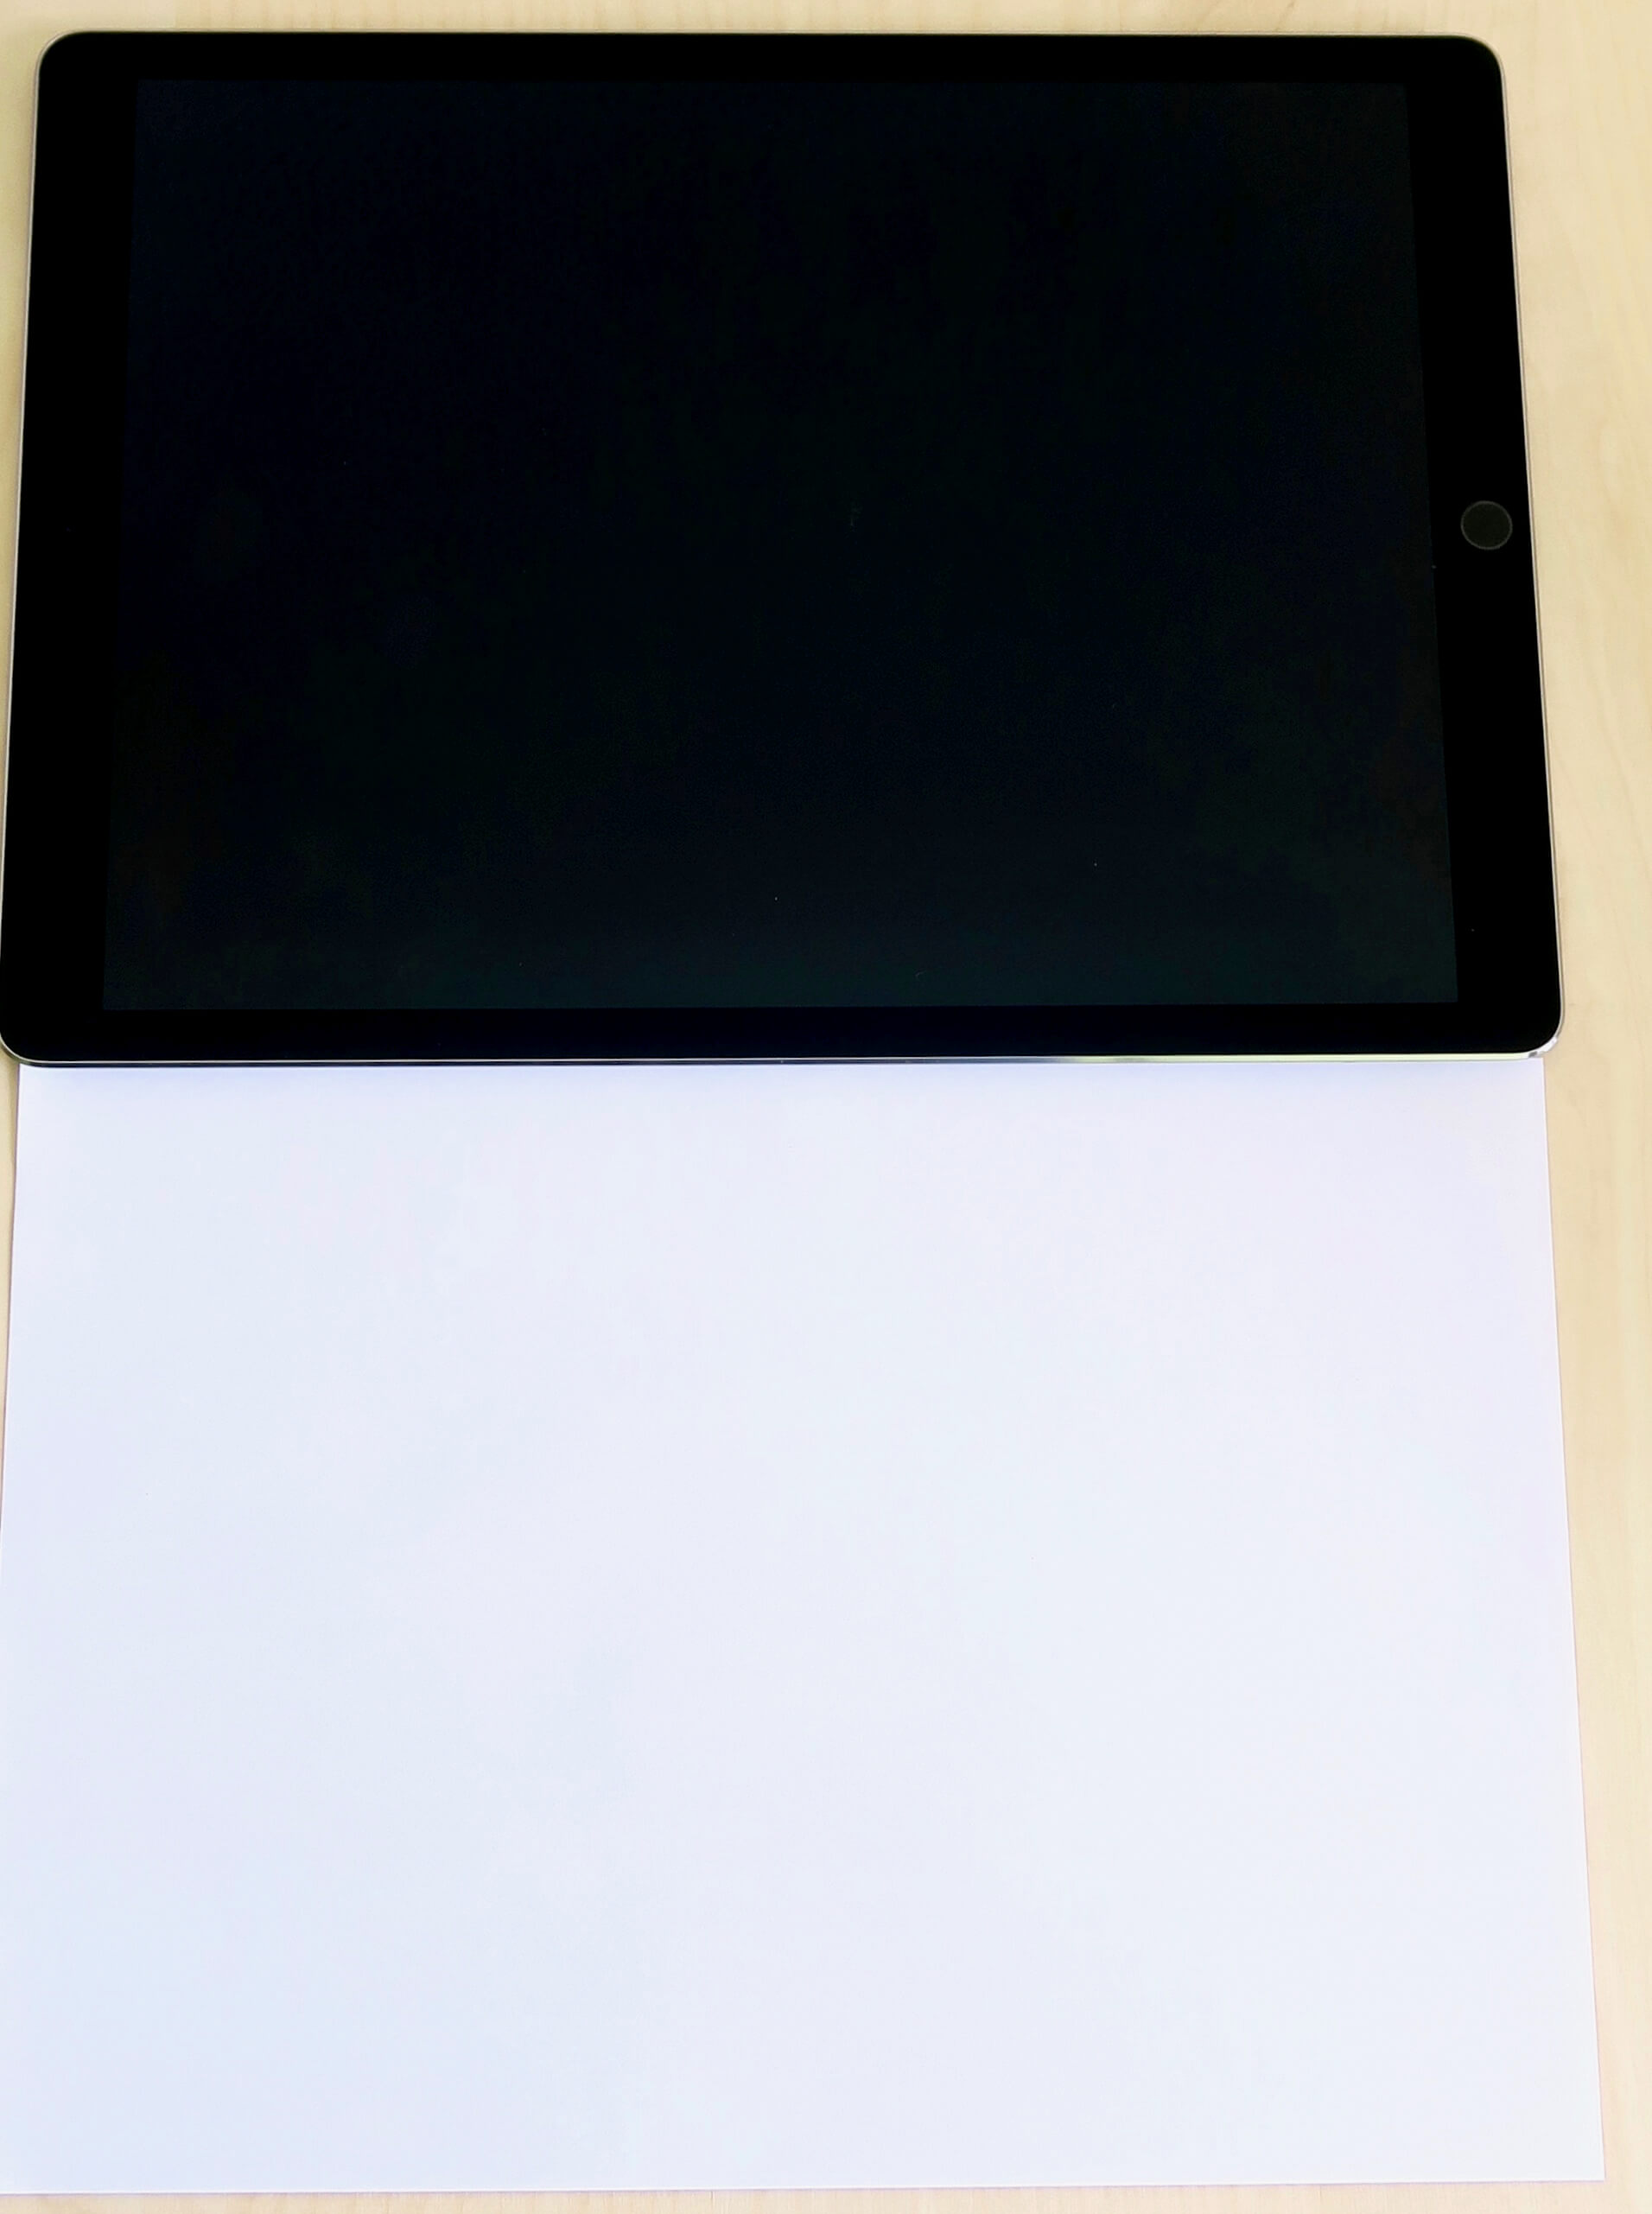 De 12,9-inch iPad Pro tegenover een A4 papier